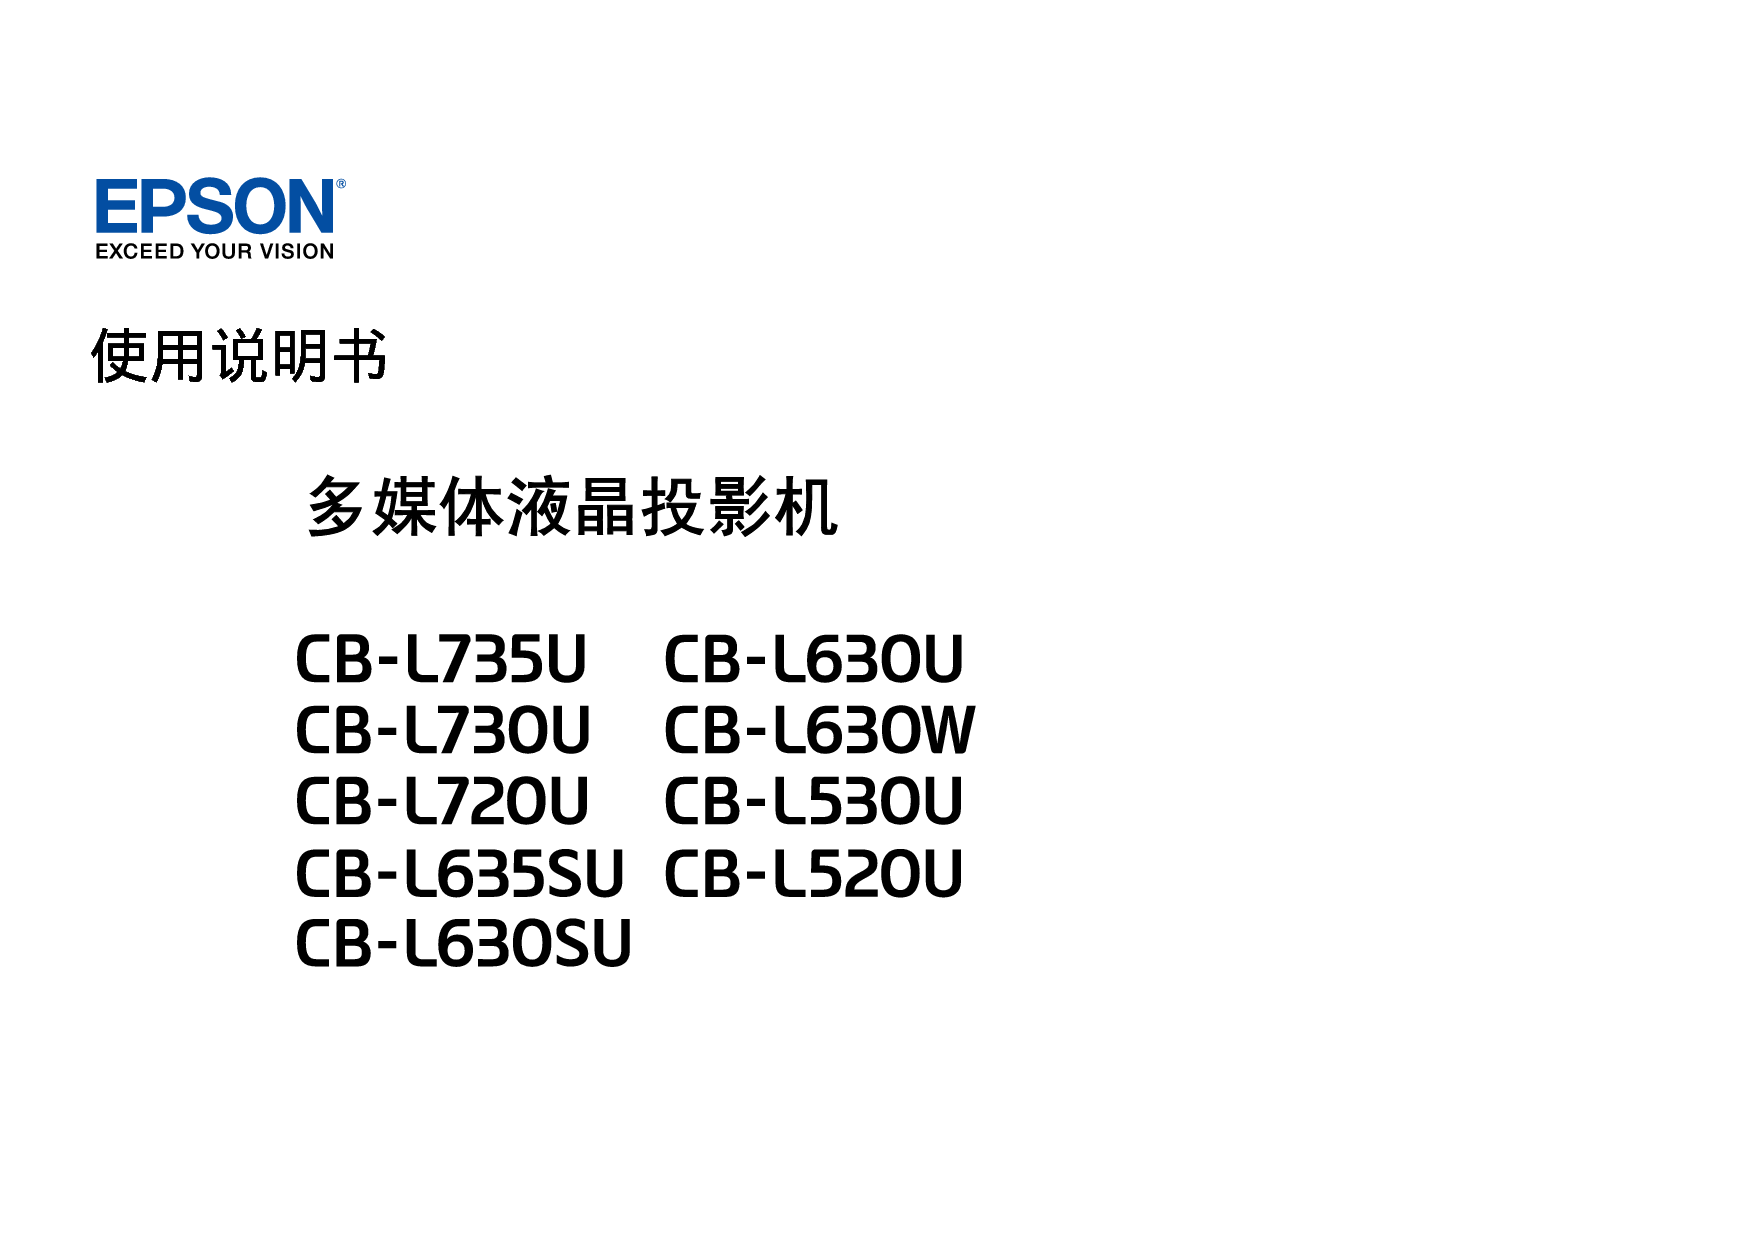 爱普生 Epson CB-L630W, CB-L735U 使用说明书 封面